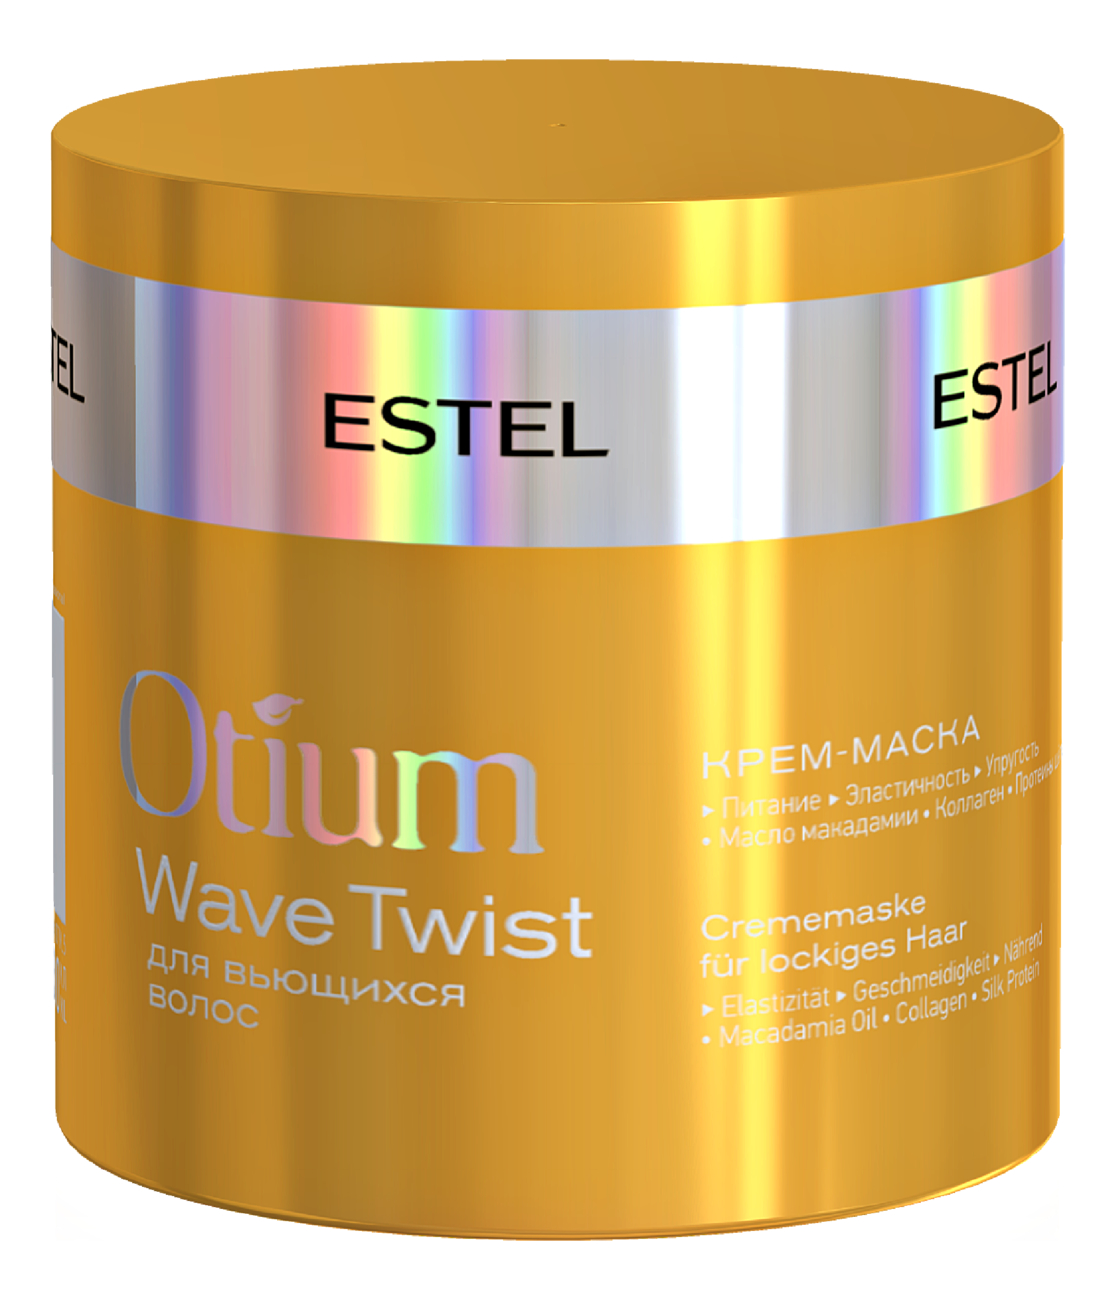 Крем-маска для вьющихся волос Otium Wave Twist 300мл крем маска для вьющихся волос otium wave twist estel эстель 300мл